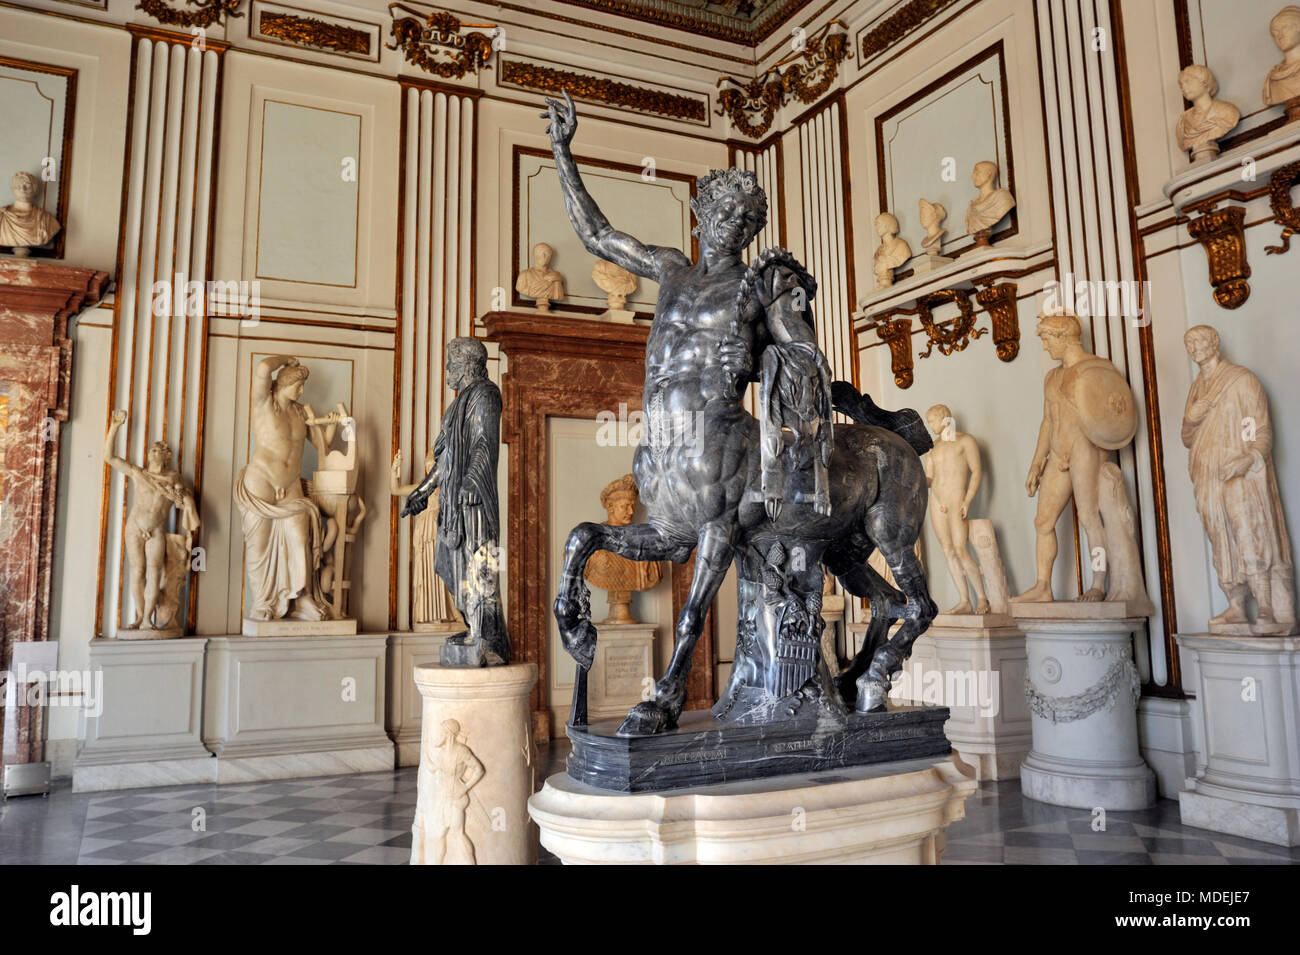 Italy, Rome, Capitoline Museums, Musei Capitolini, Palazzo Nuovo, Great Hall, Centauro Giovane, Young Centaur (Furietti Centaur), roman sculpture Stock Photo